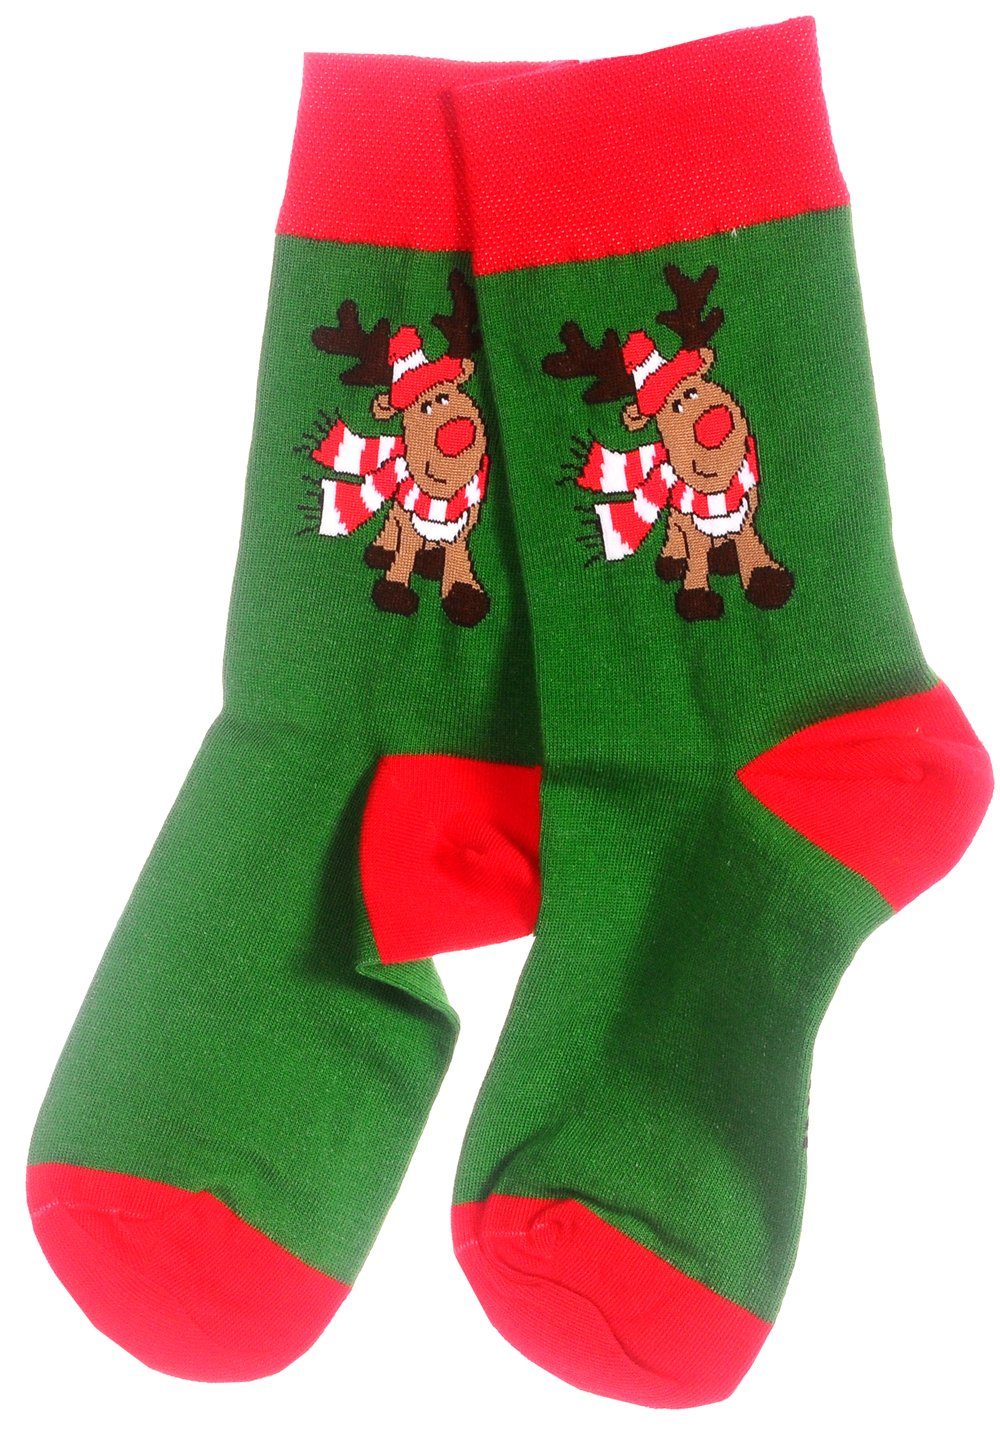 Martinex Weihnachtssocken Socken 42 38 43 46 Lustige witzige 39 35 bunte Strümpfe